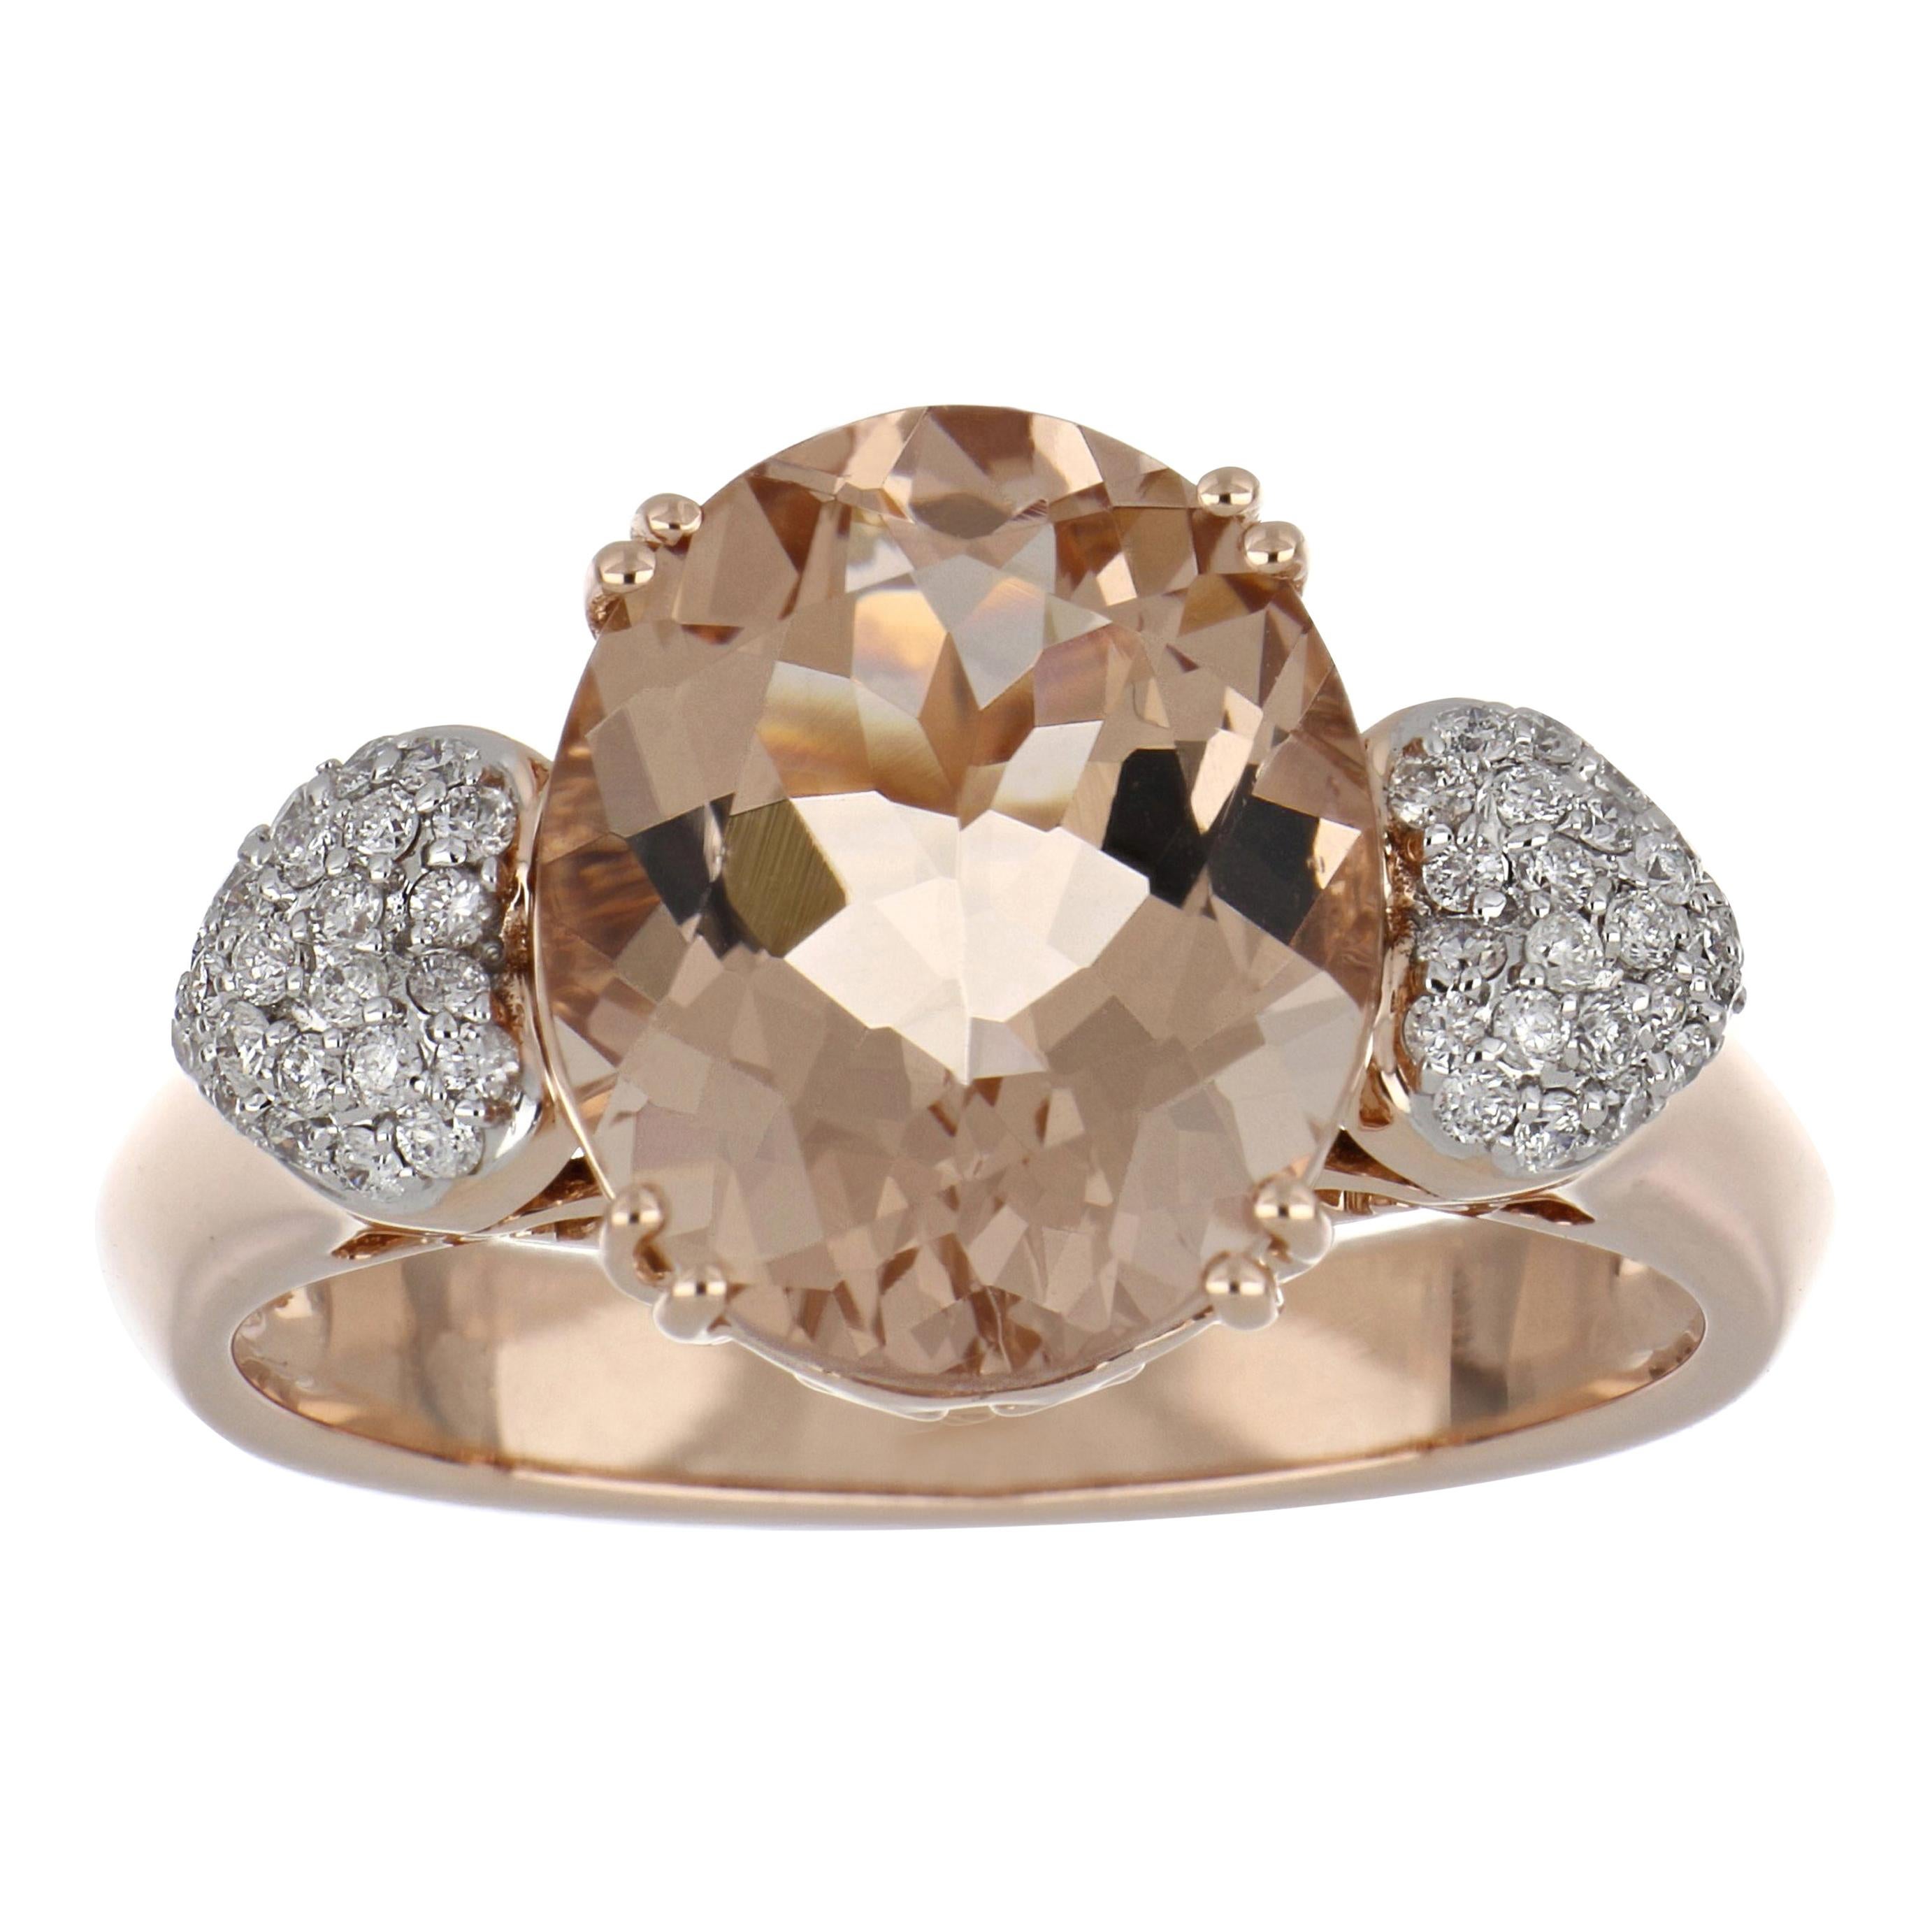 4.12 Carat Morganite Ring with Diamonds in 14 Karat Rose Gold